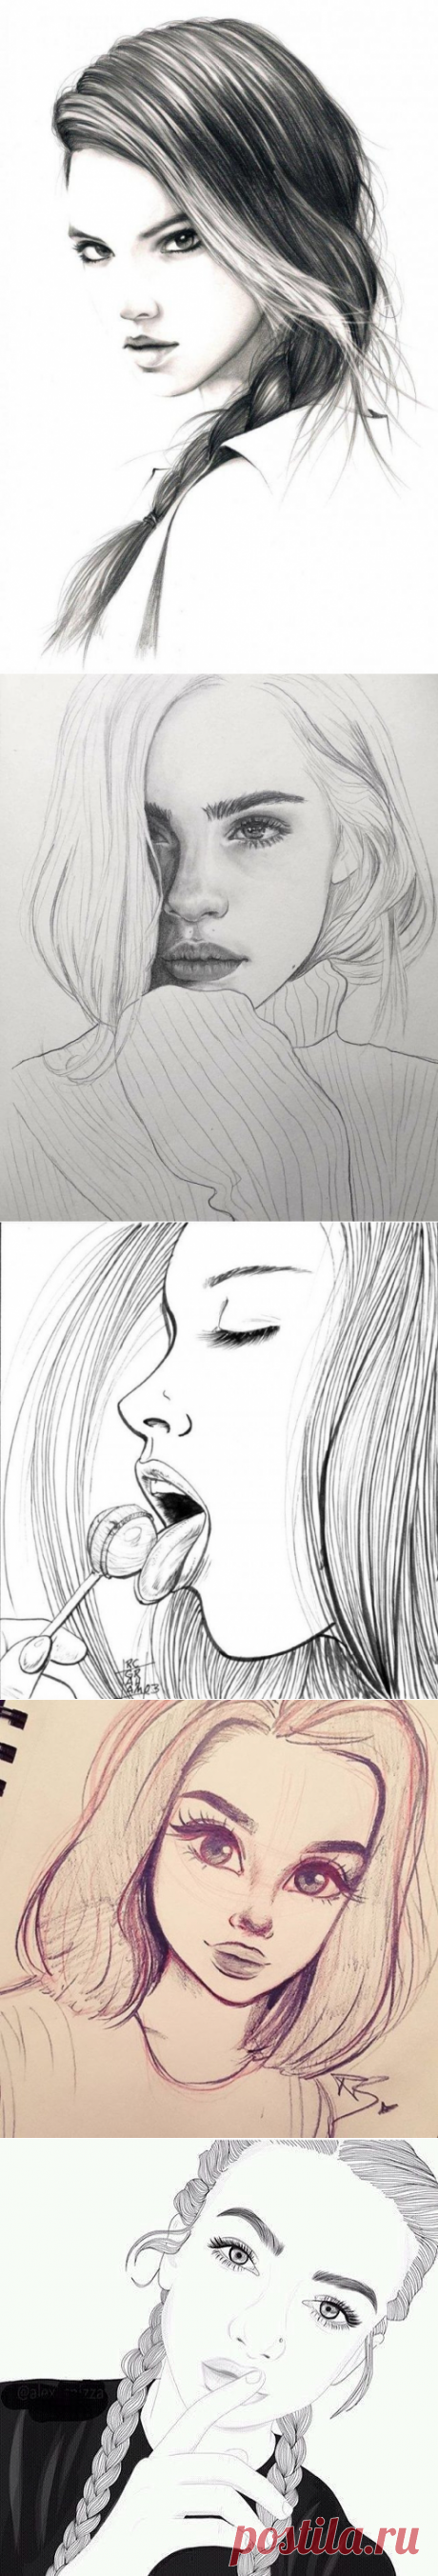 Рисунки девушек для срисовки (40 фото) • Прикольные картинки и позитив